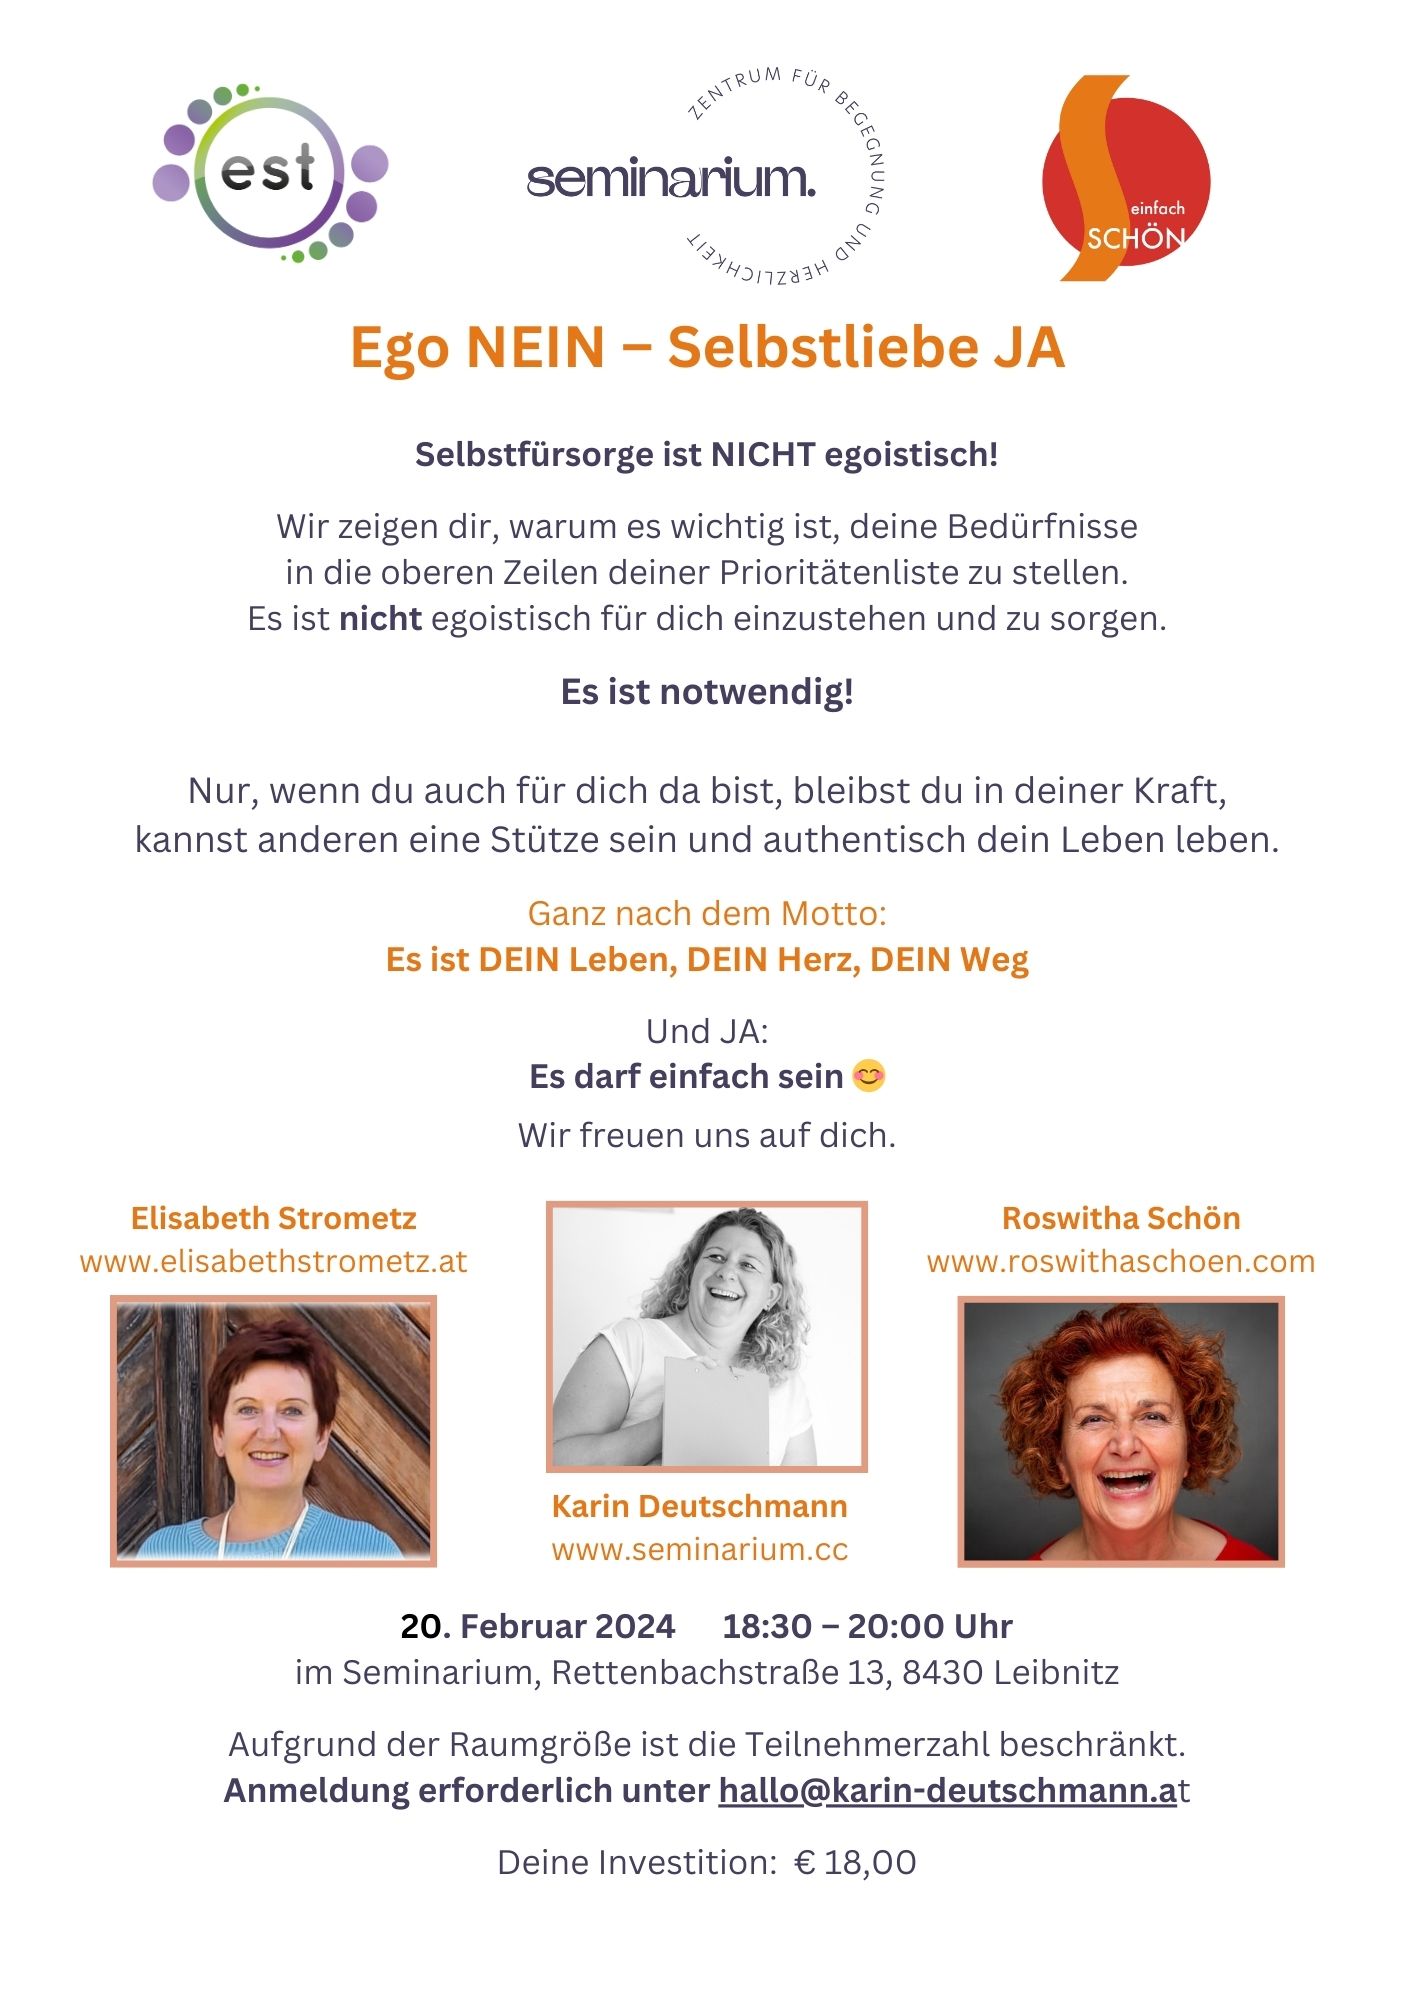 Ego NEIN - Selbstliebe JA, Impulsvortrag im Seminarium, Leibnitz